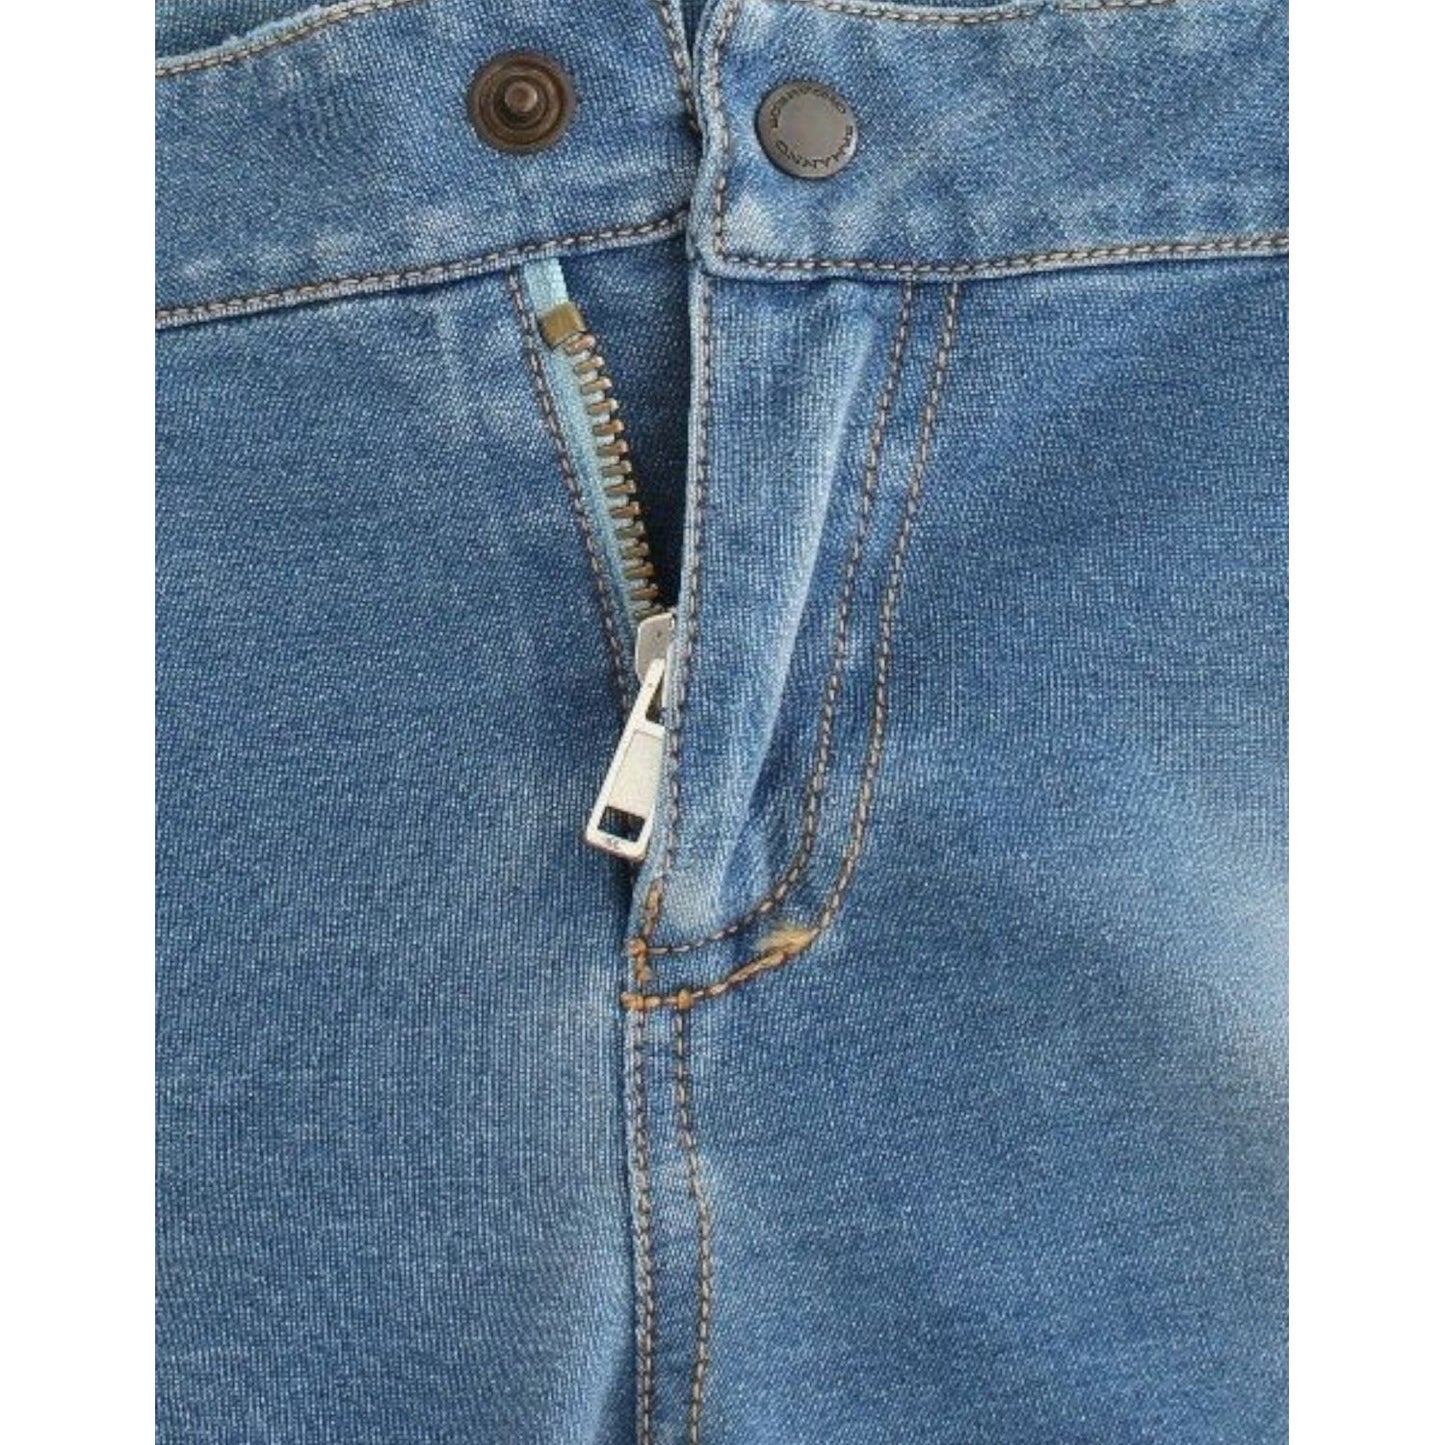 Ermanno Scervino Chic Blue Capri Jeans for Elegant Summers Jeans & Pants beachwear-blue-jeans-capri-pants-cropped